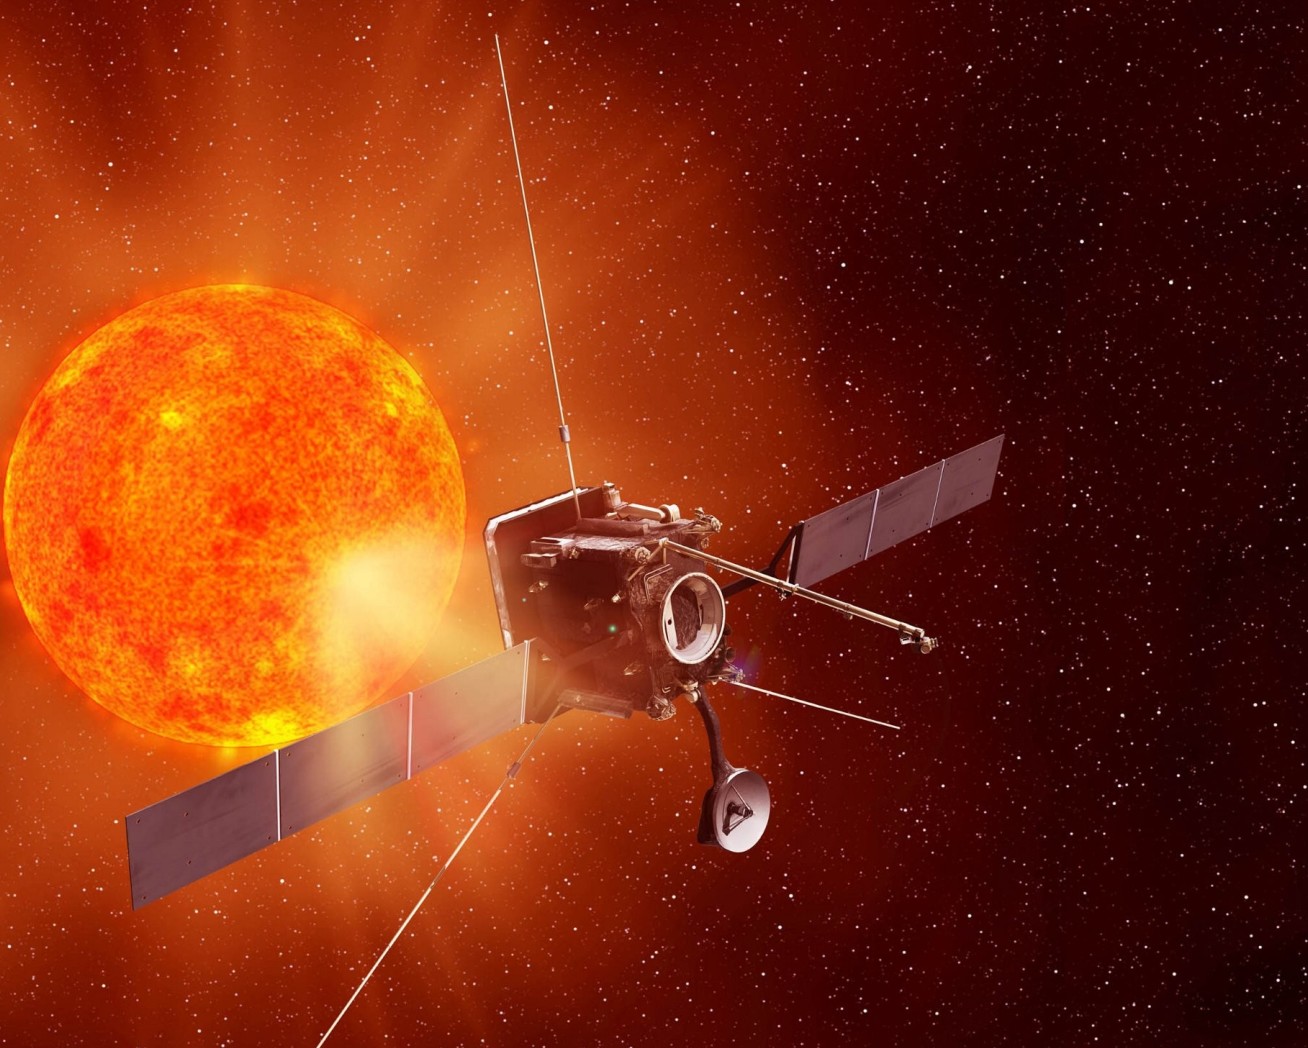 An illustration of ESA’s Solar Orbiter in orbit around the Sun